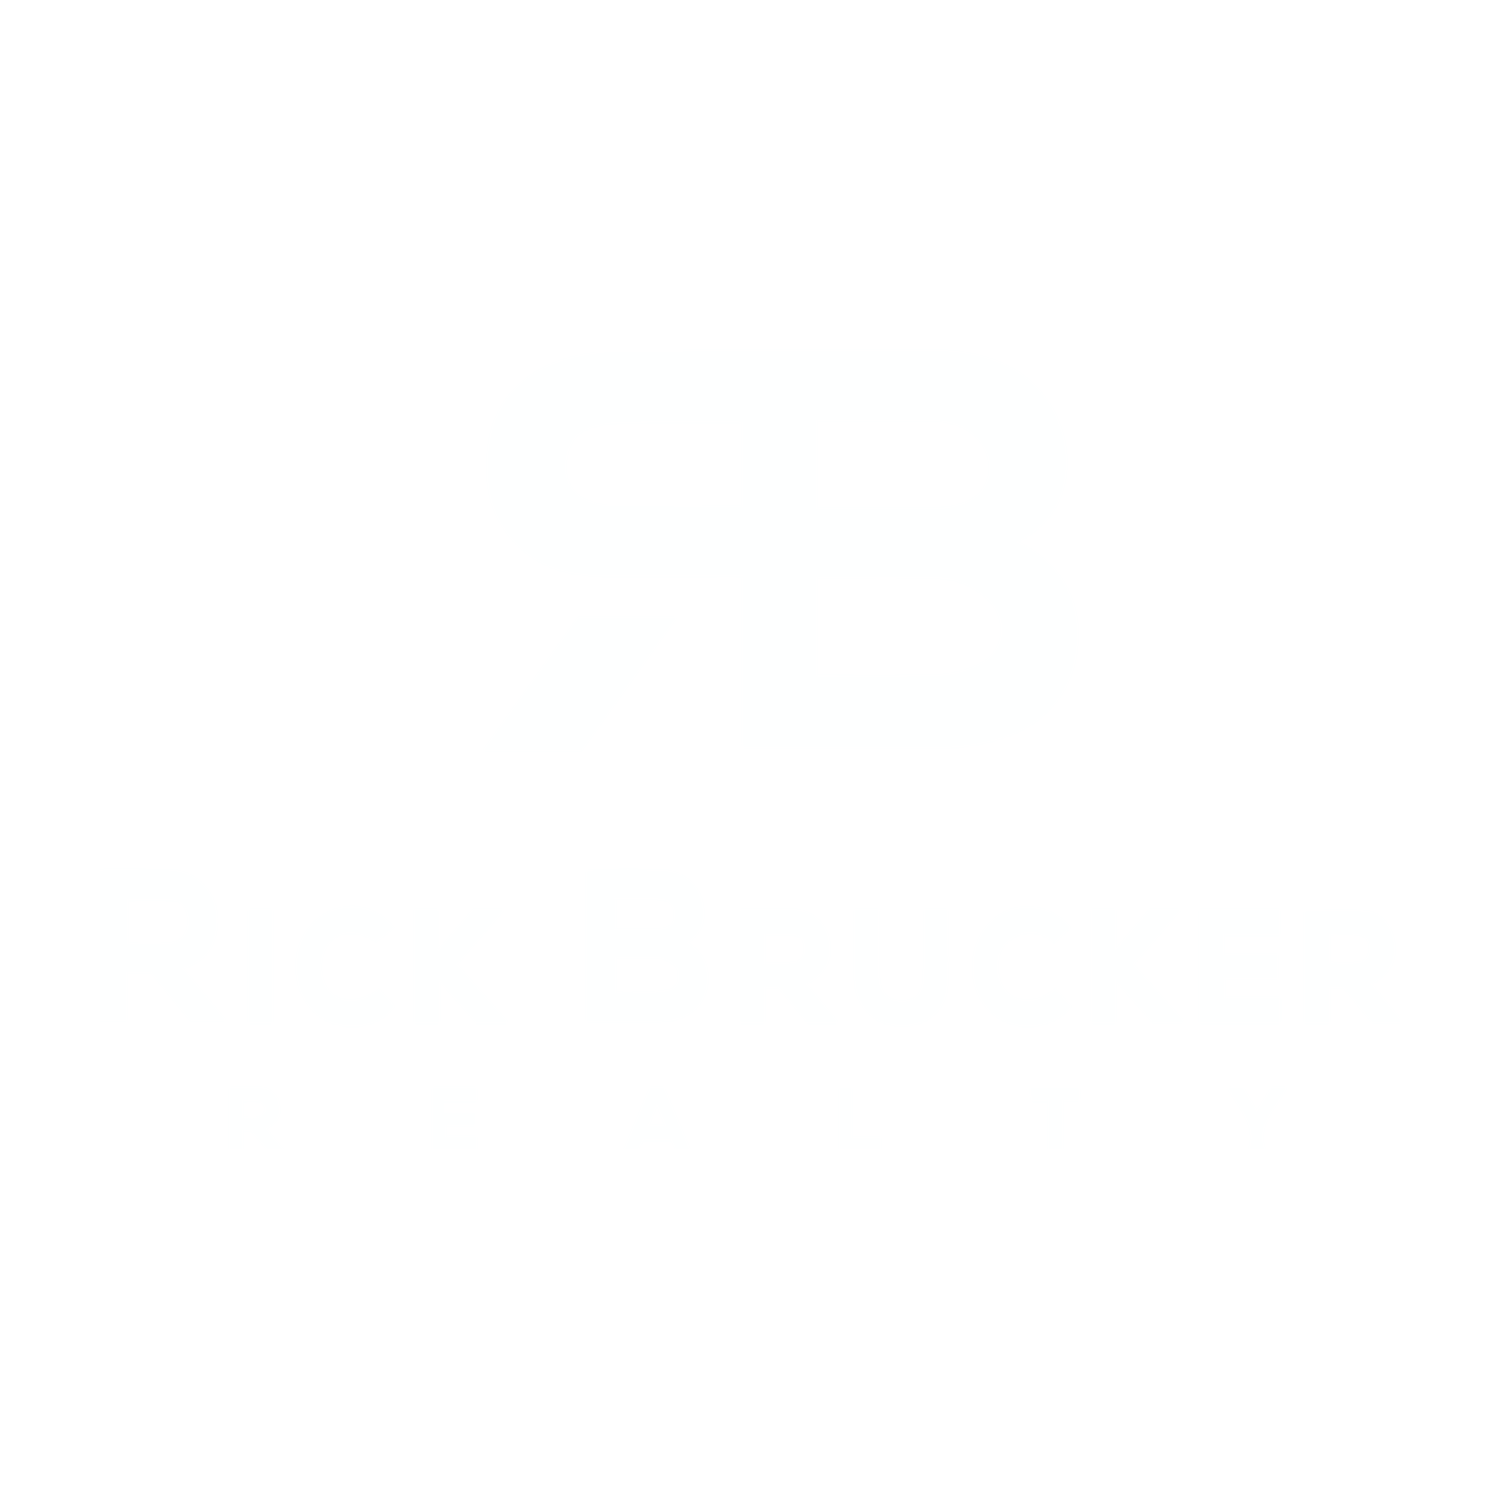 Rick Brucker